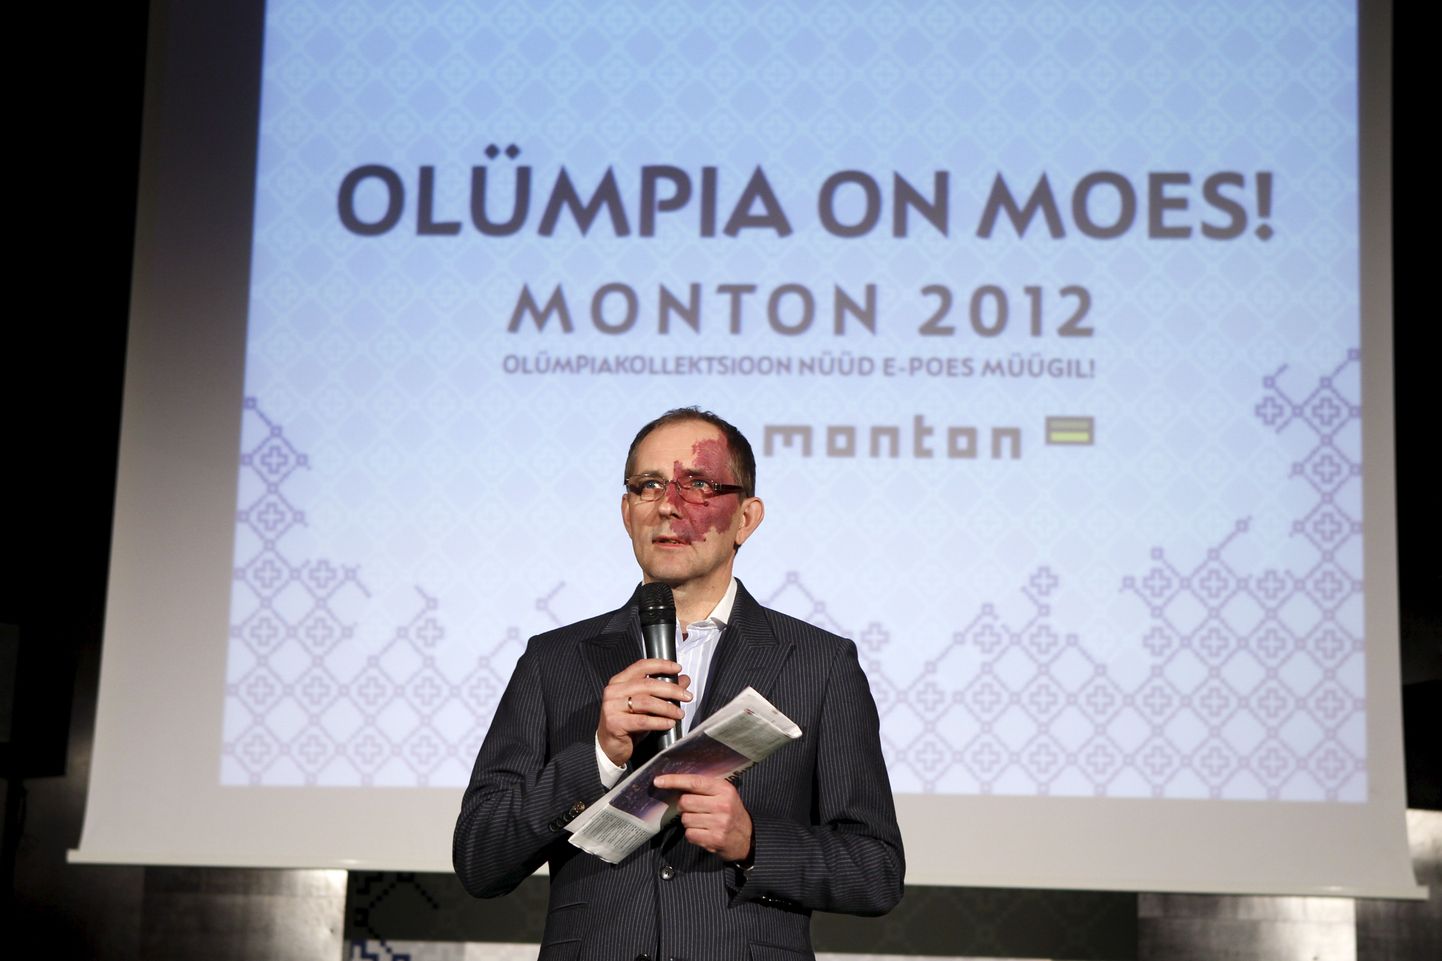 Monton esitles Londoni Eesti olümpiakoondise rõivakollektsiooni.